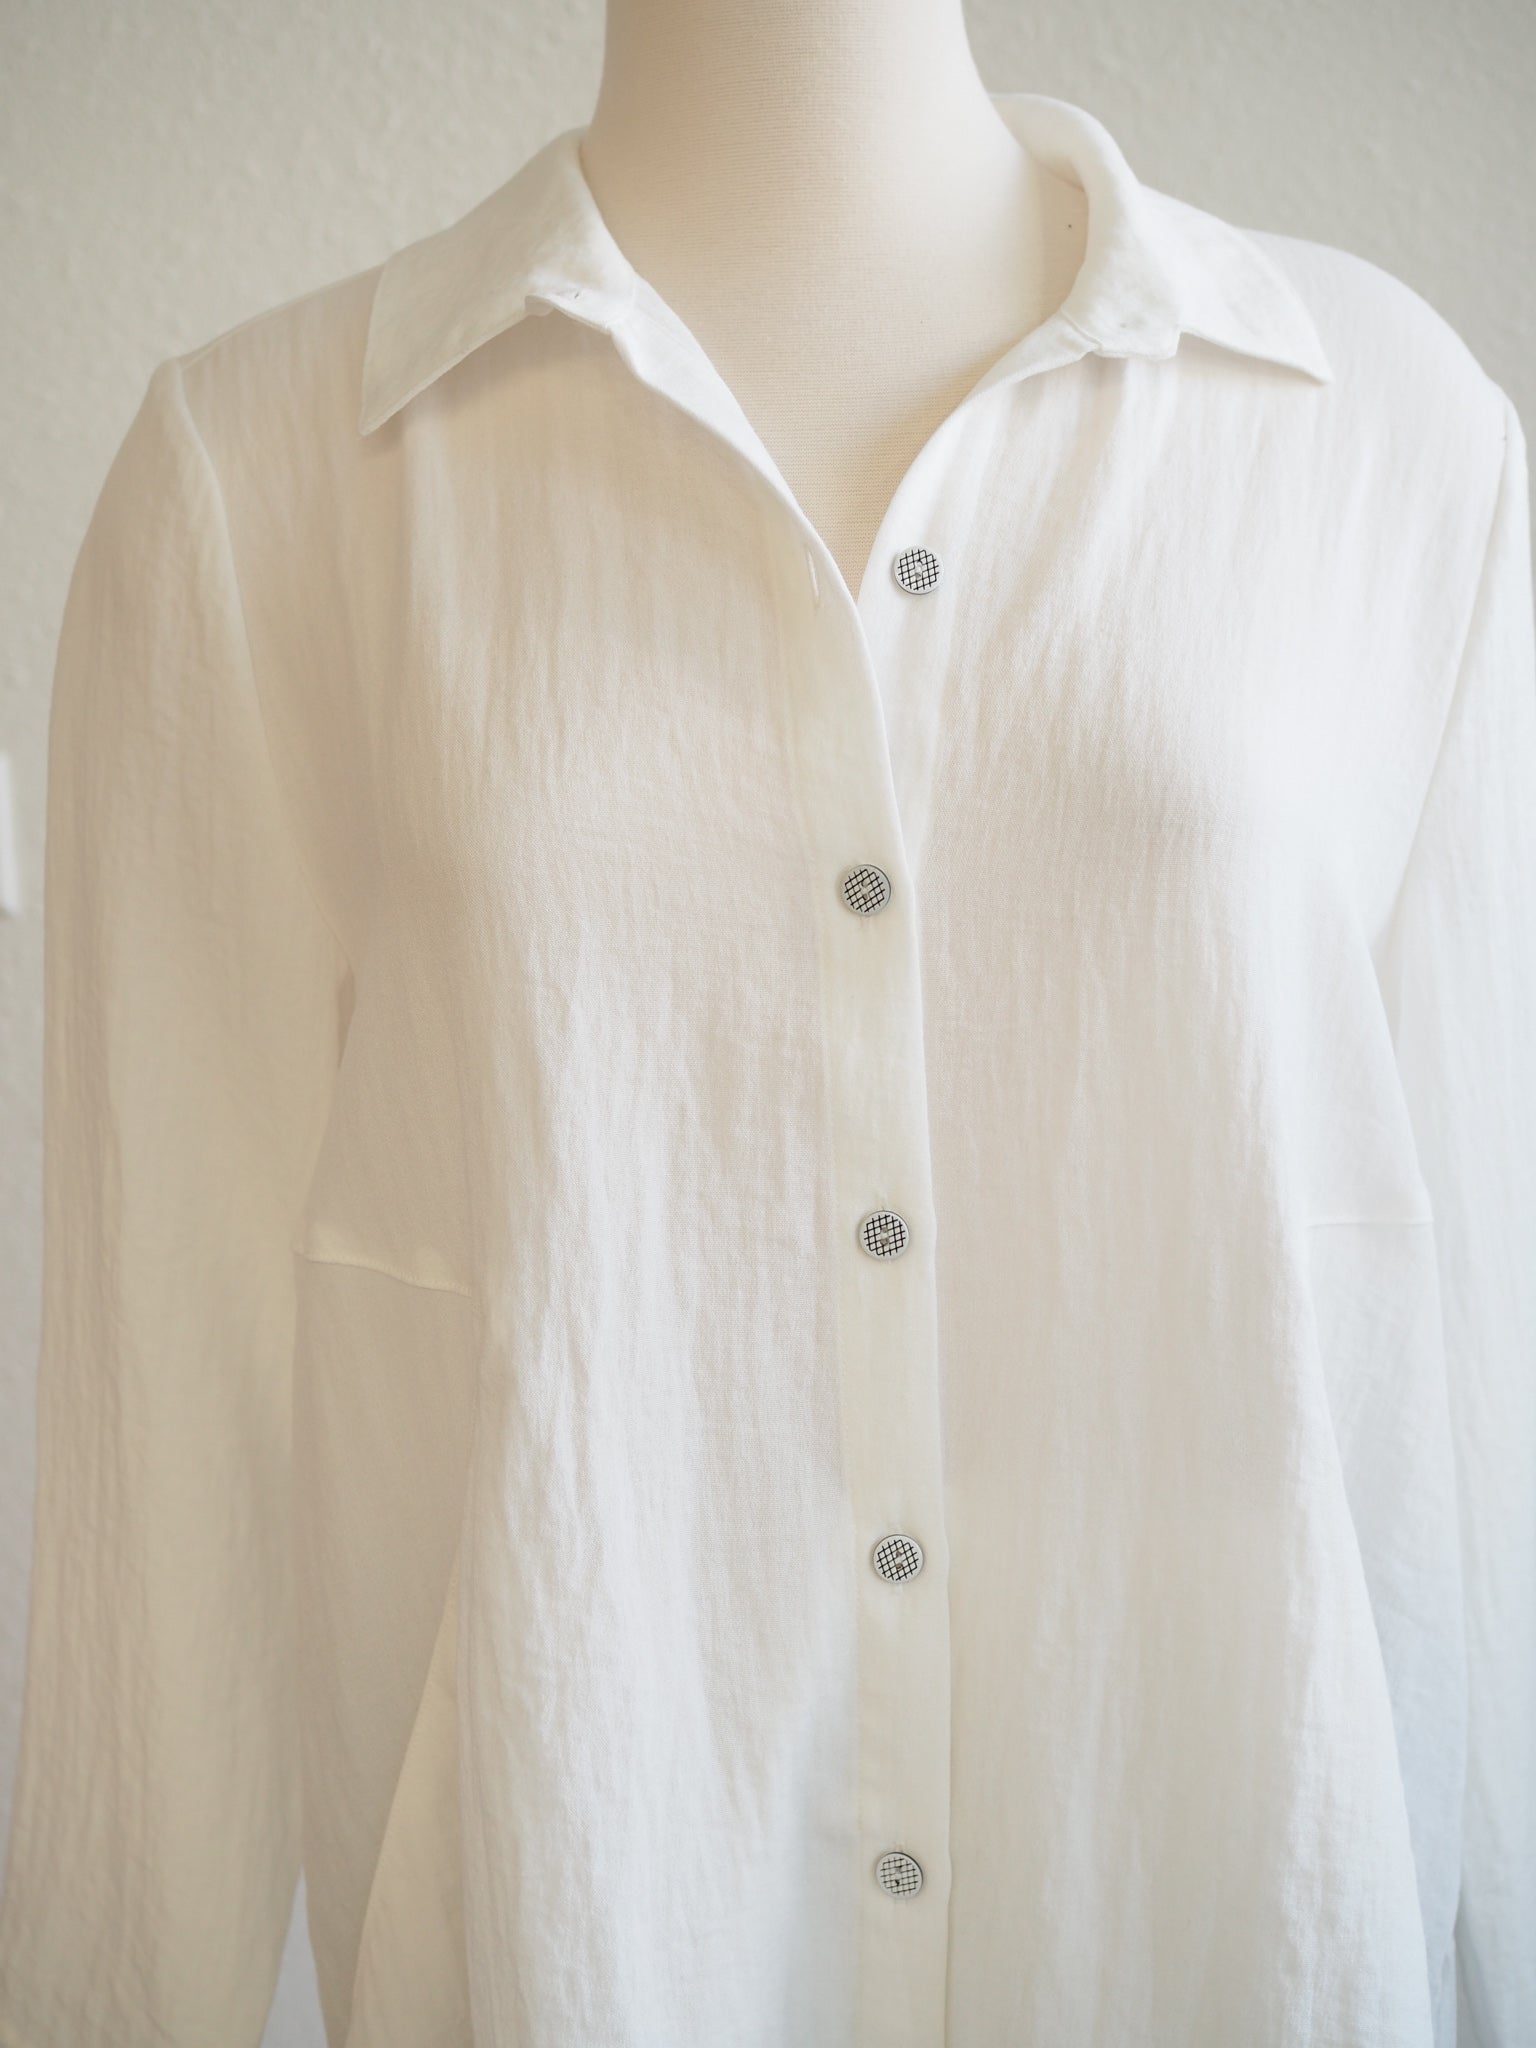 winter white shirt